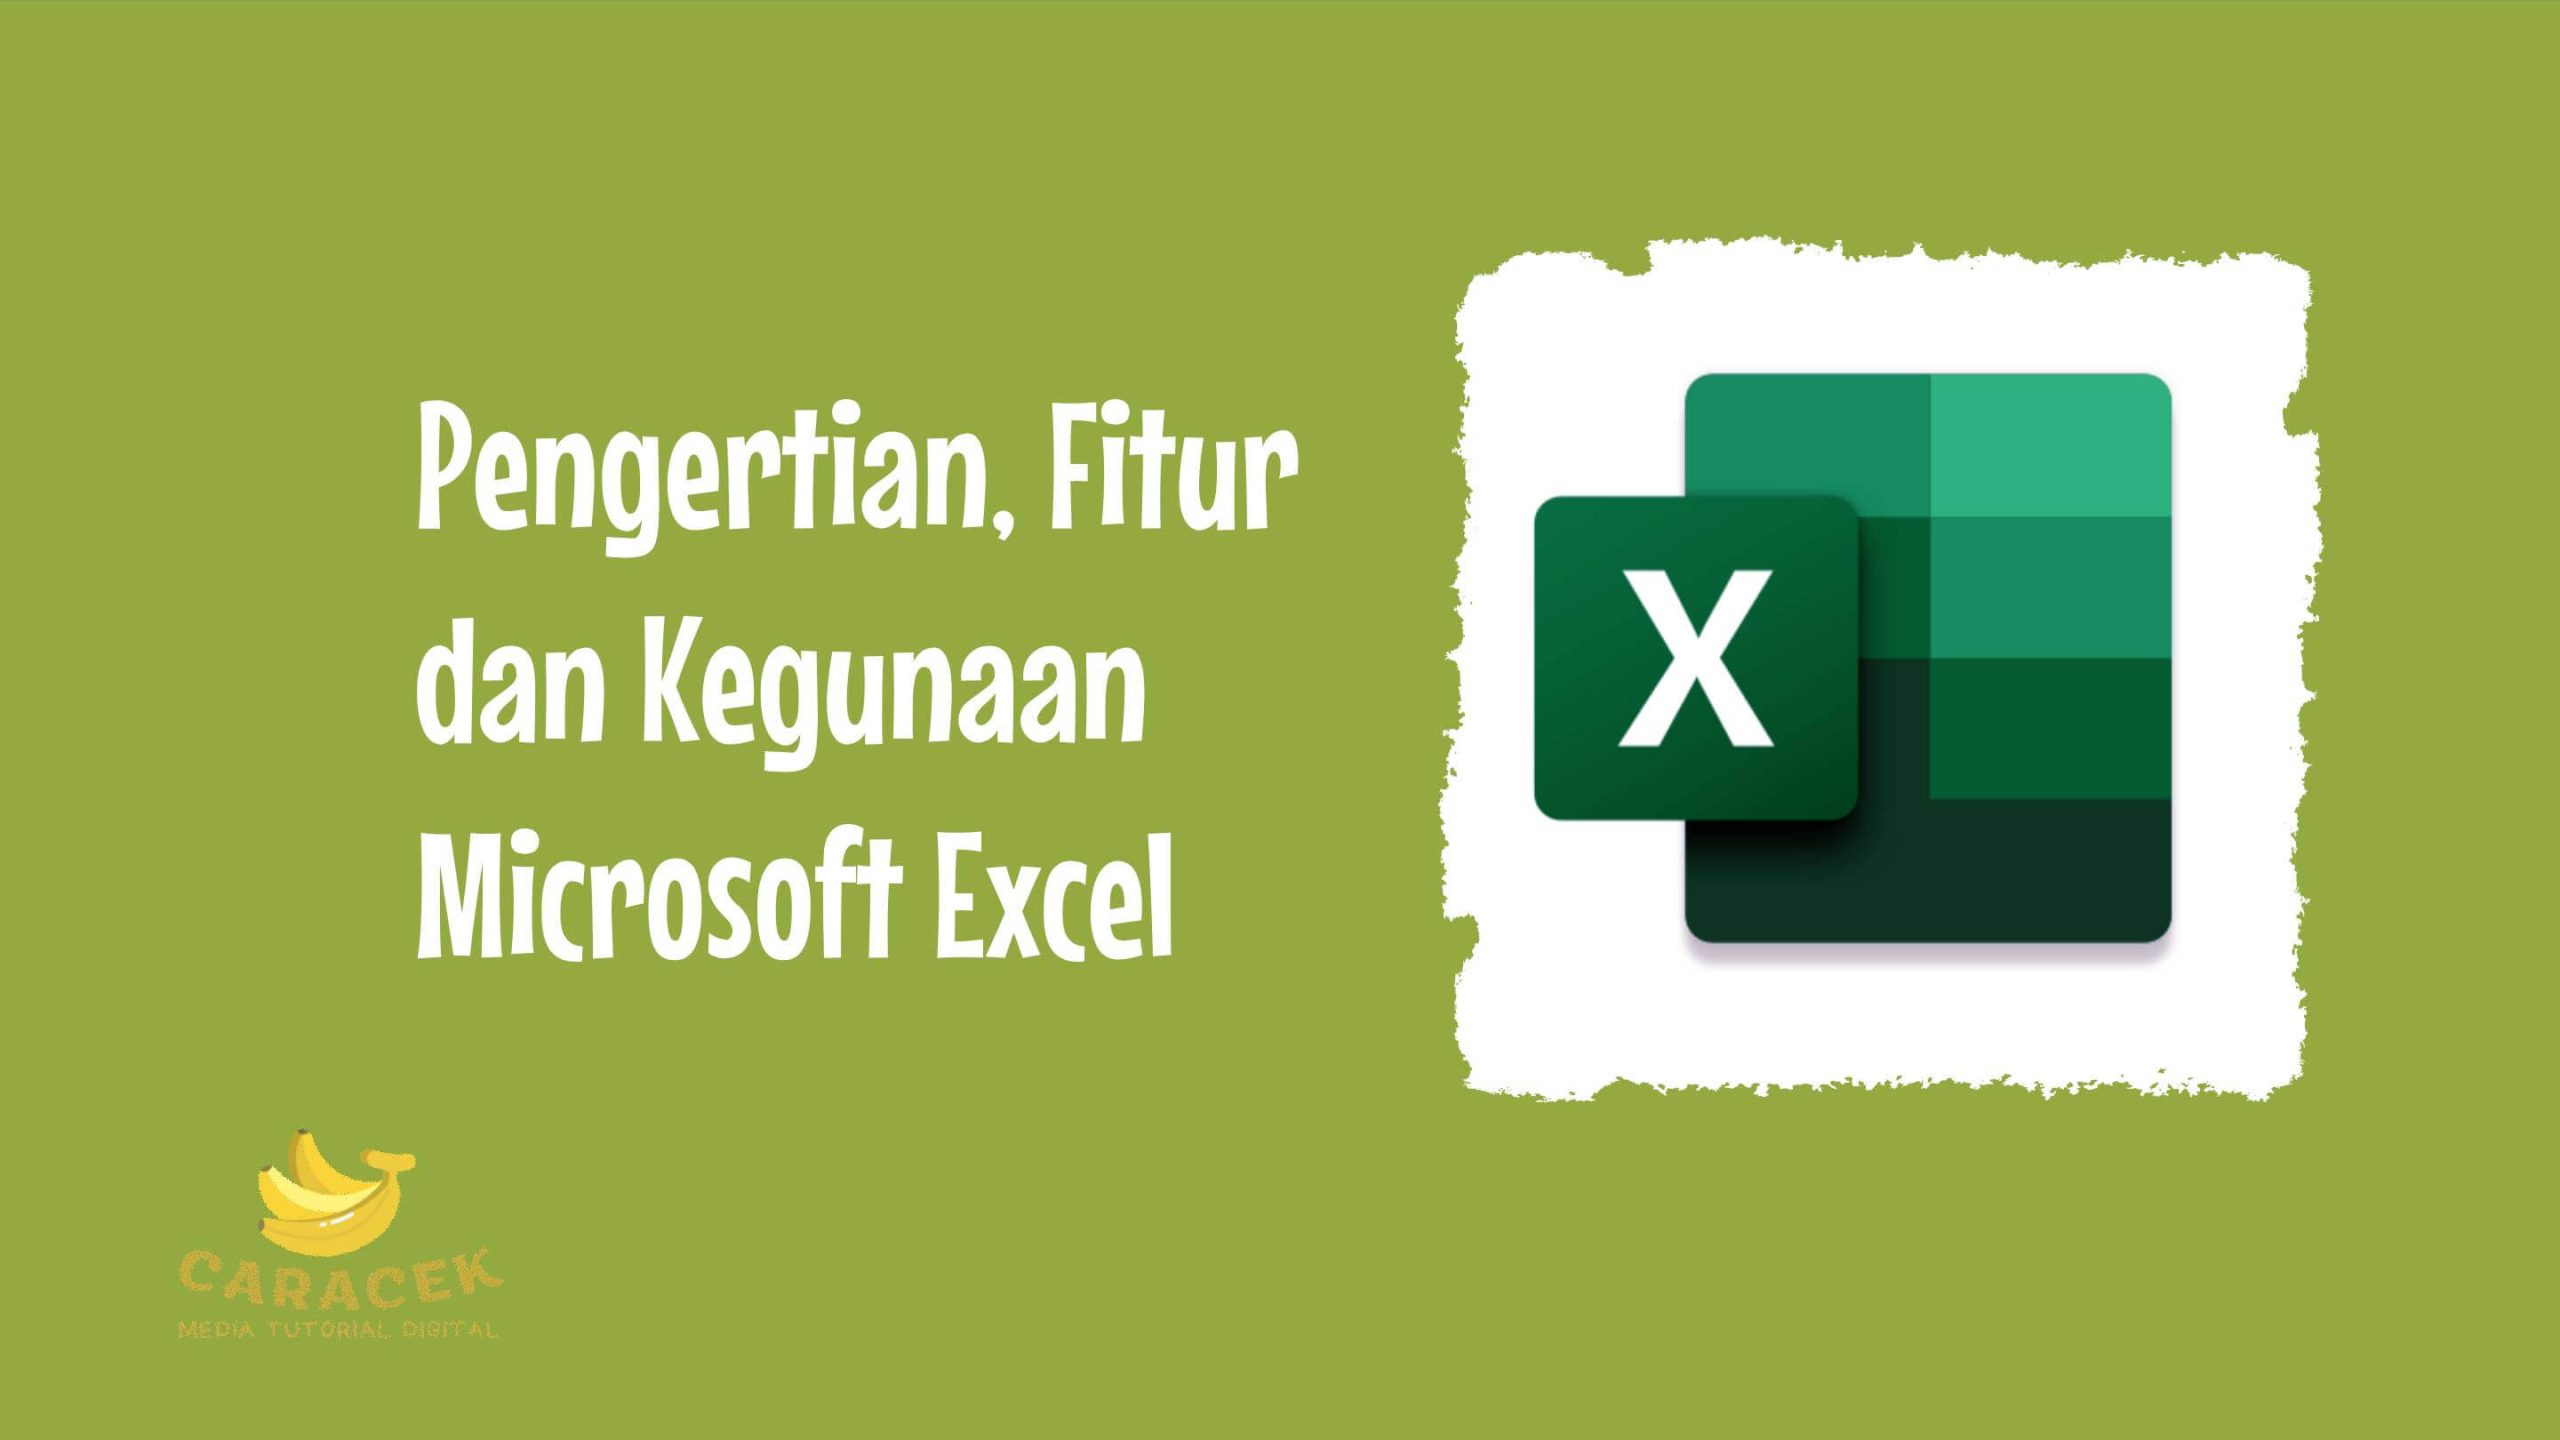 Kegunaan Microsoft Excel